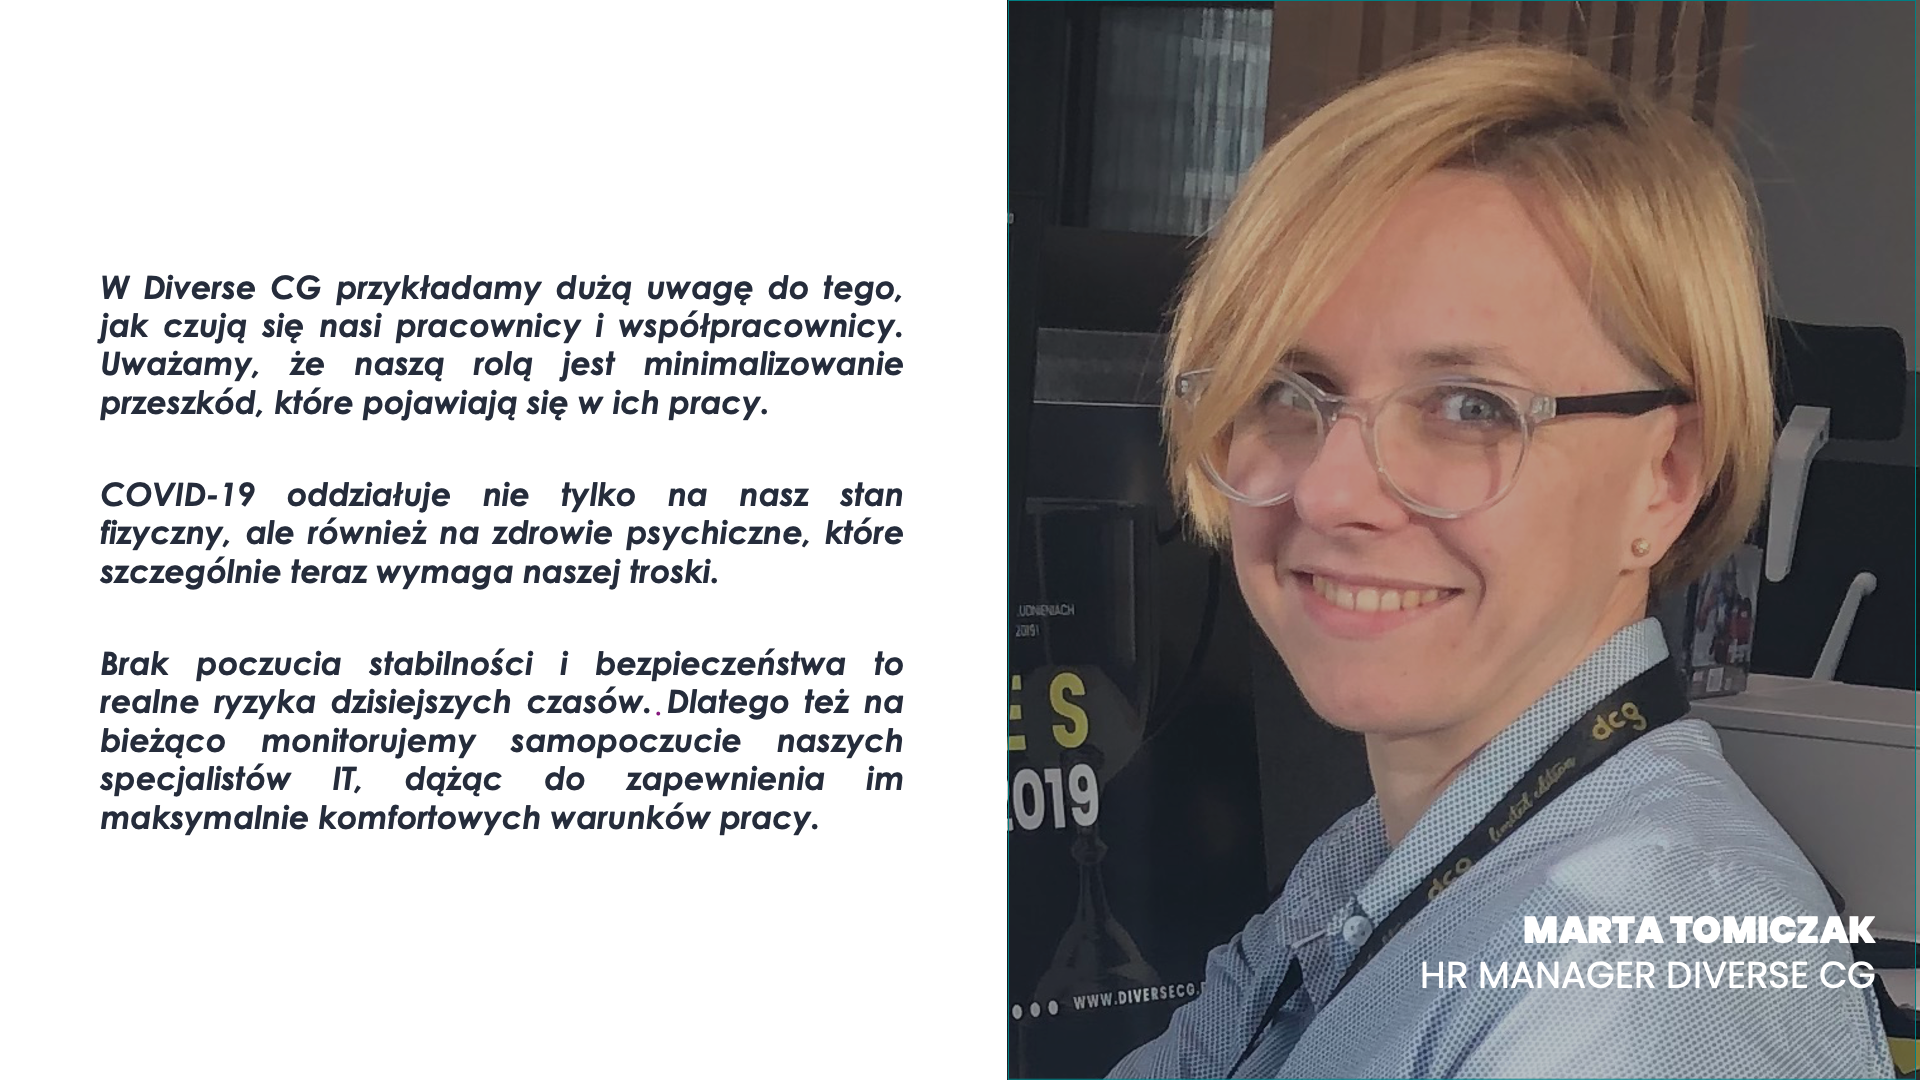 Marta Tomiczak - HR Manager